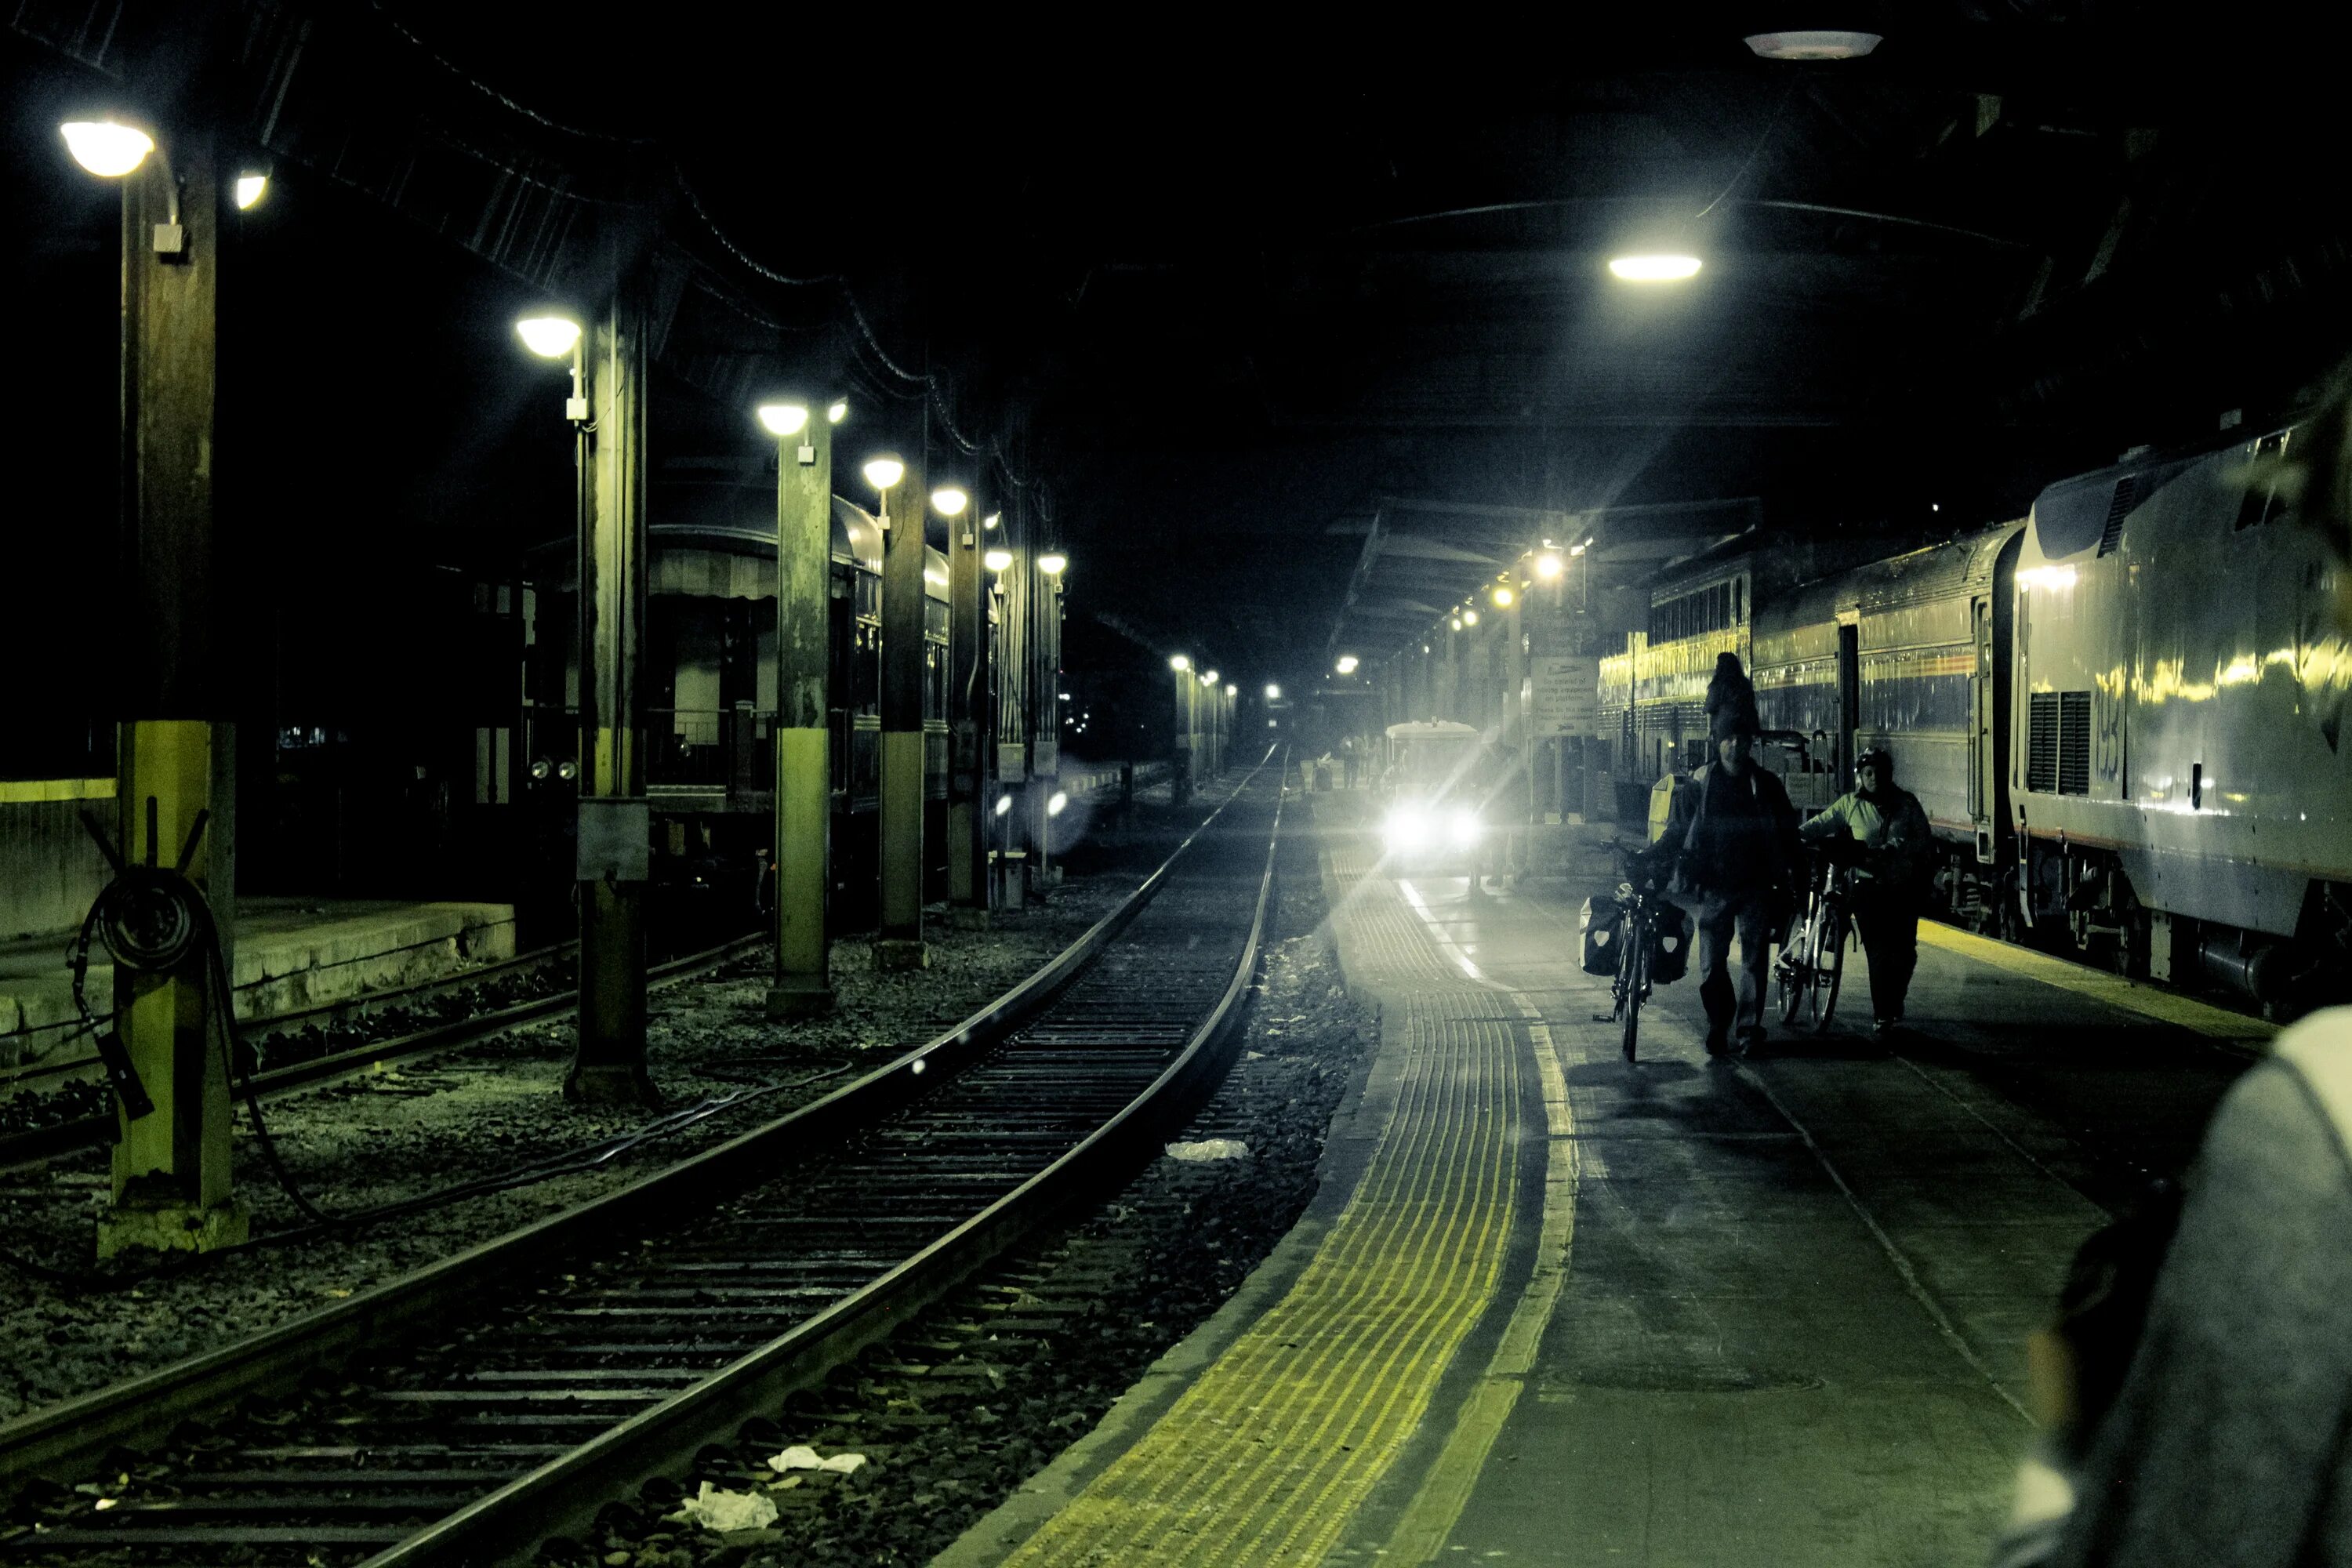 Поезд в темноте. Ночной вокзал. Железная дорога ночью. Ночной поезд. ЖД вокзал ночью.